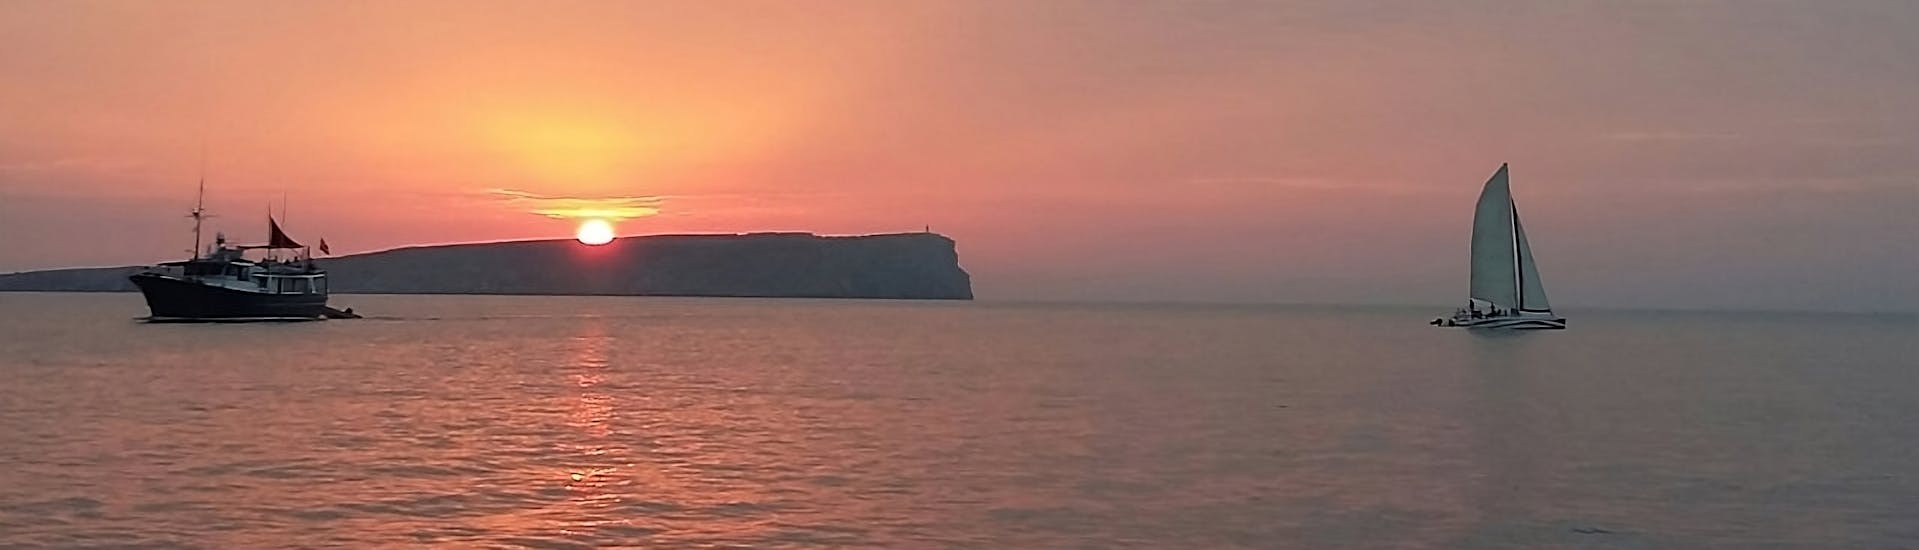 La vista de la puesta de sol que puedes ver con Katayak Menorca durante un paseo en catamarán desde Fornells con barra libre al atardecer.